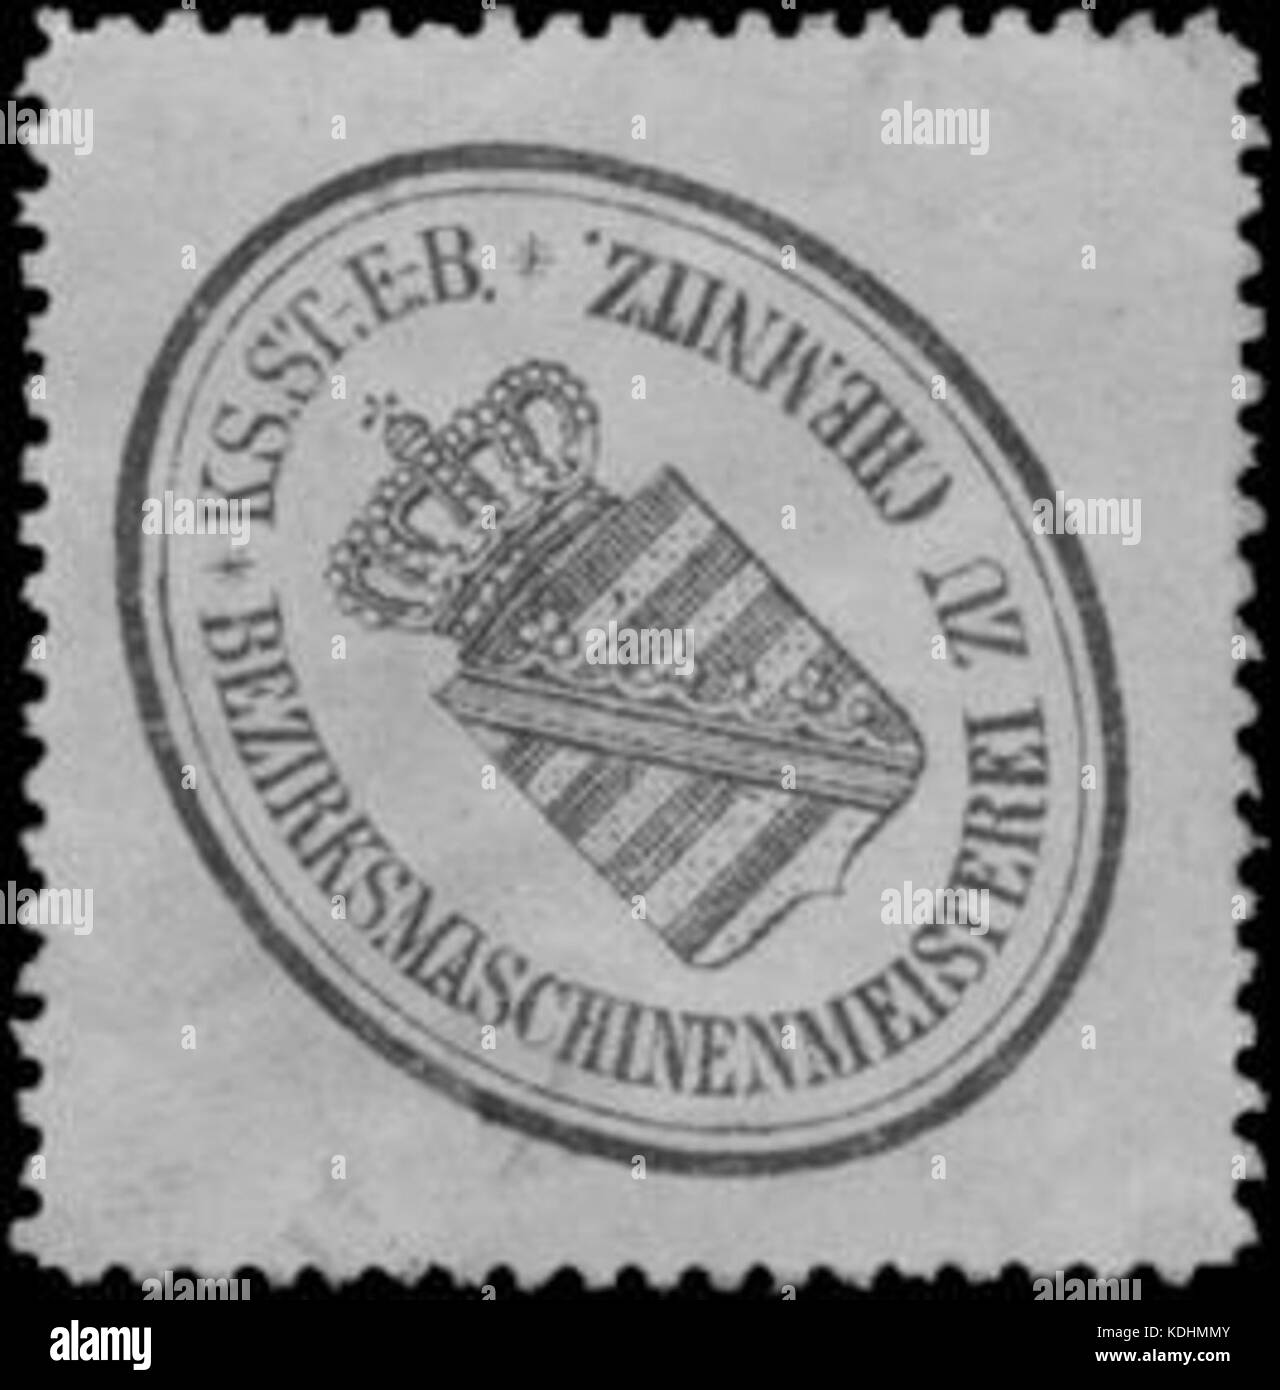 Siegelmarke K.S. S. E. B. Bezirksmaschinenmeisterei zu Chemnitz W0348046 Foto Stock